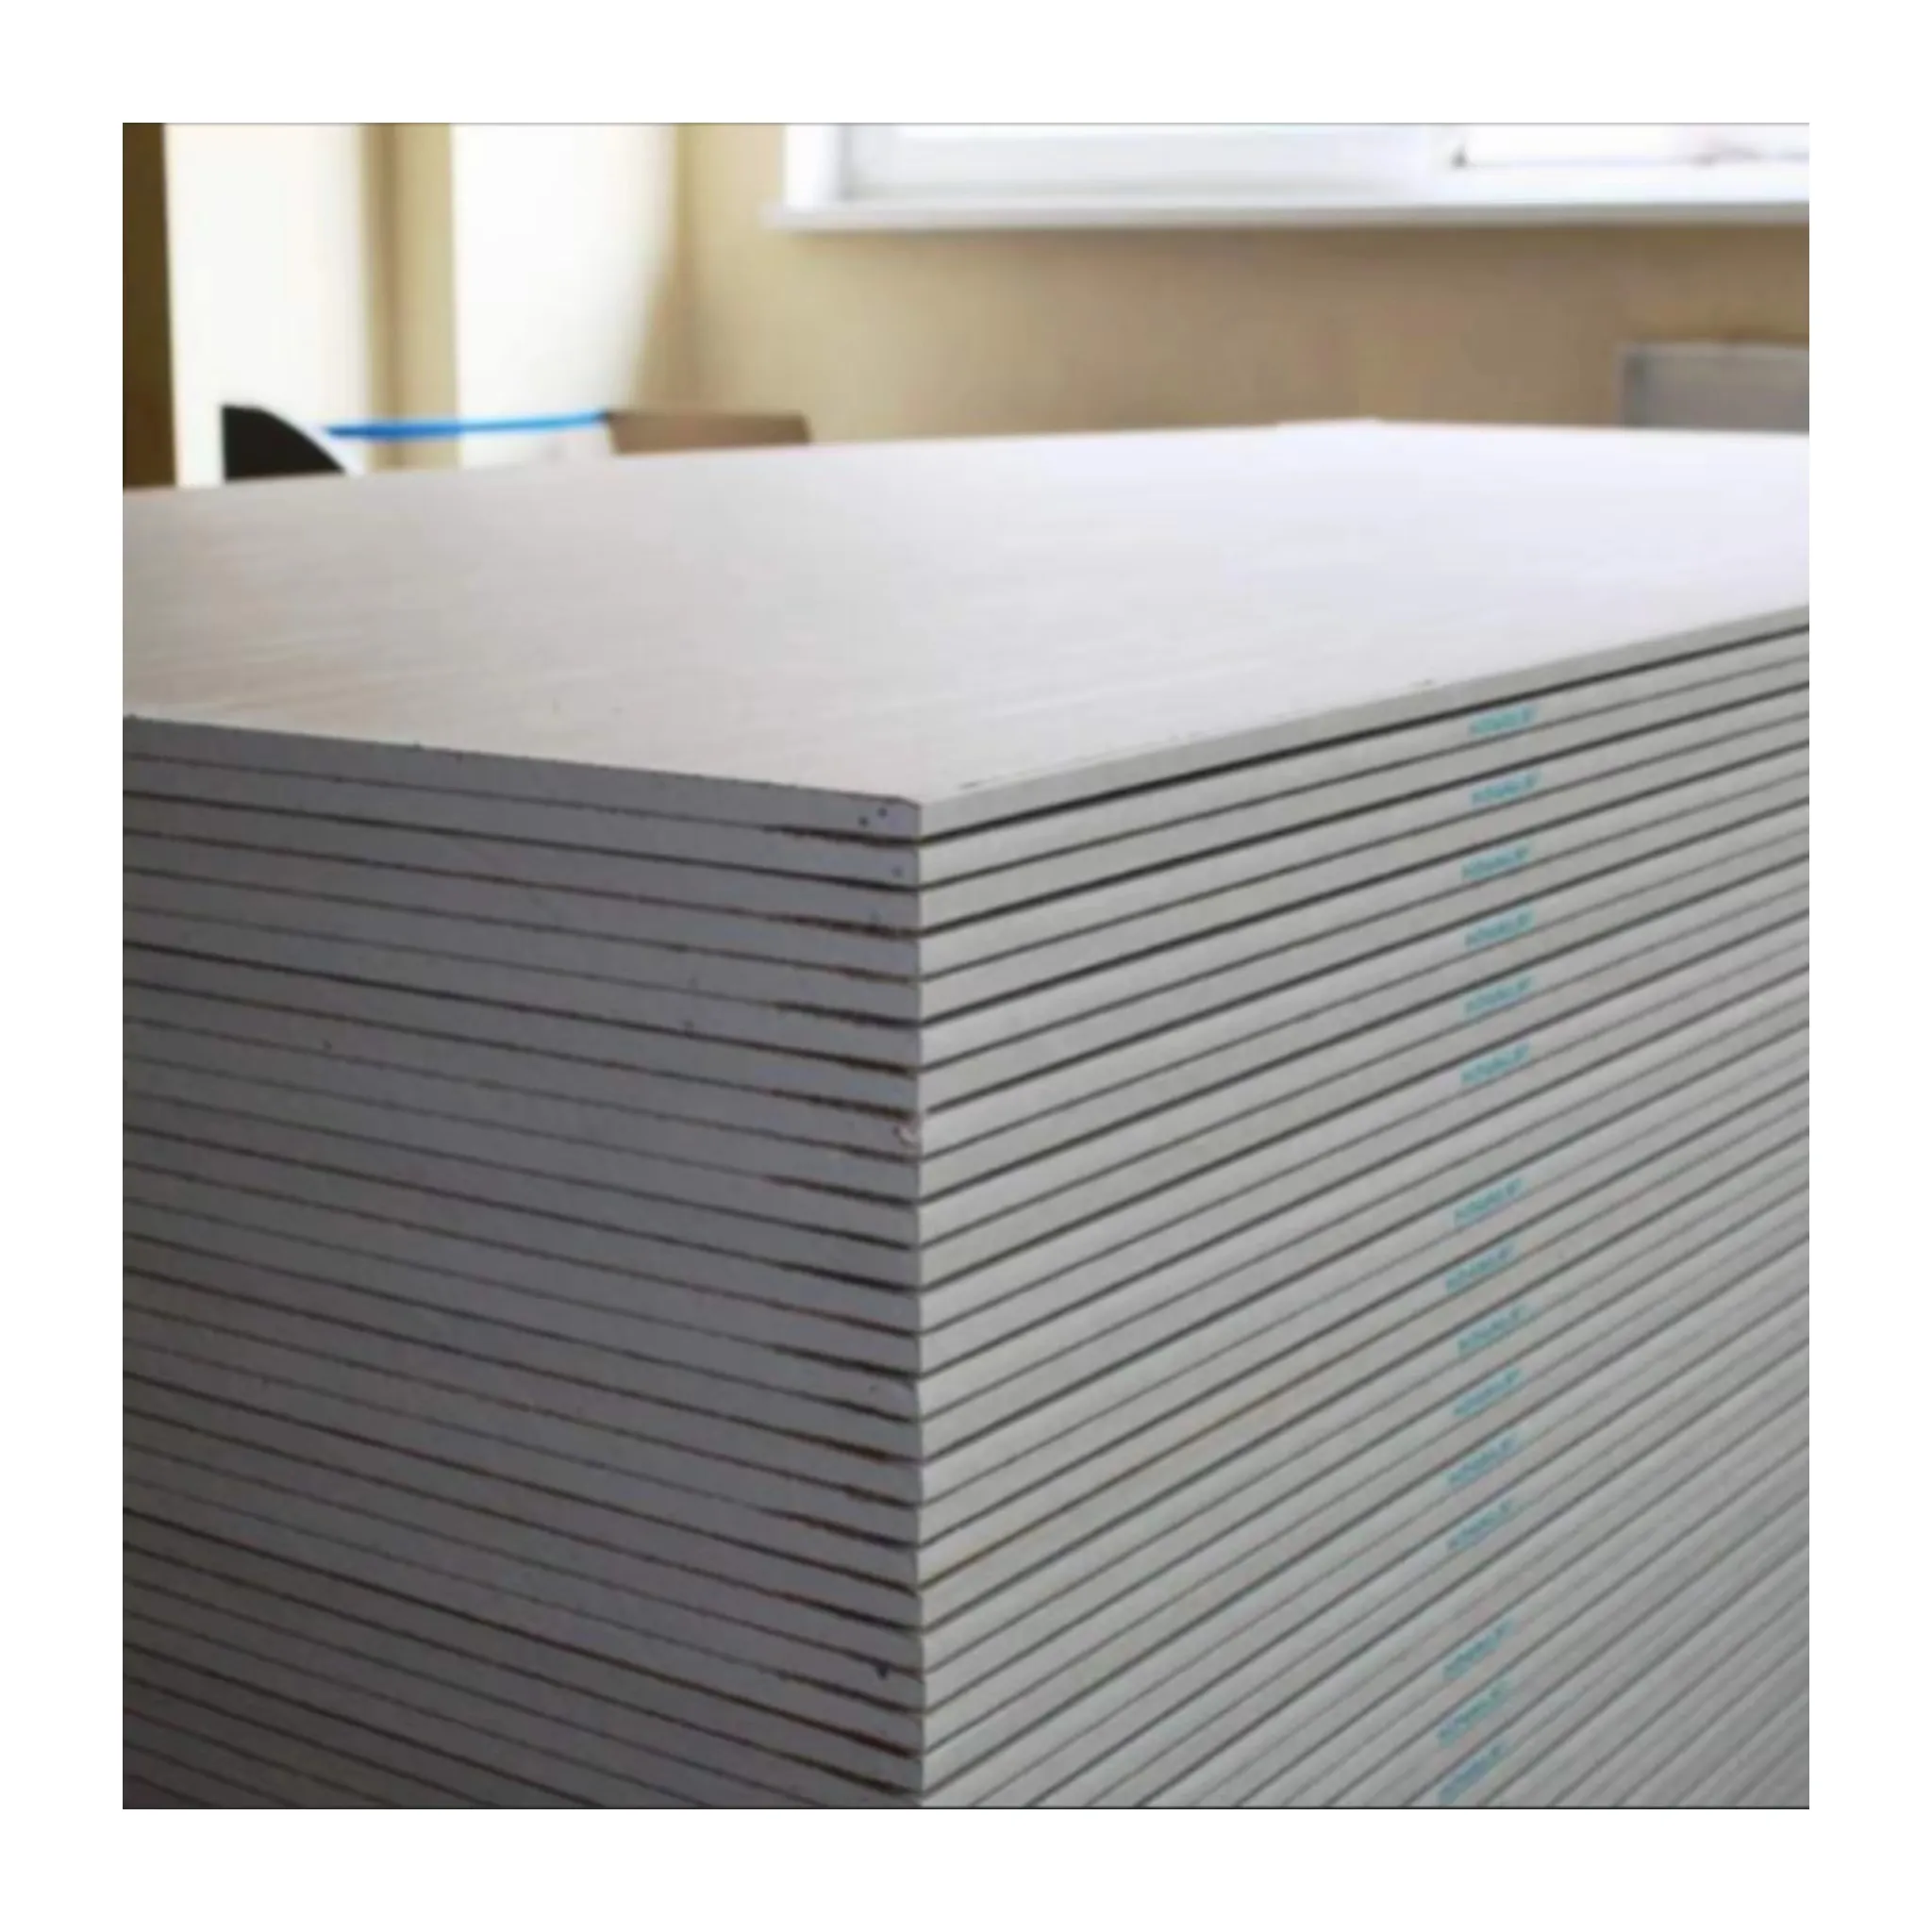 Novo Tipo 9.5/12mm Partição Drywall Material de Construção Preços Baratos Plaster Board Gypsum Boards para drywall e teto